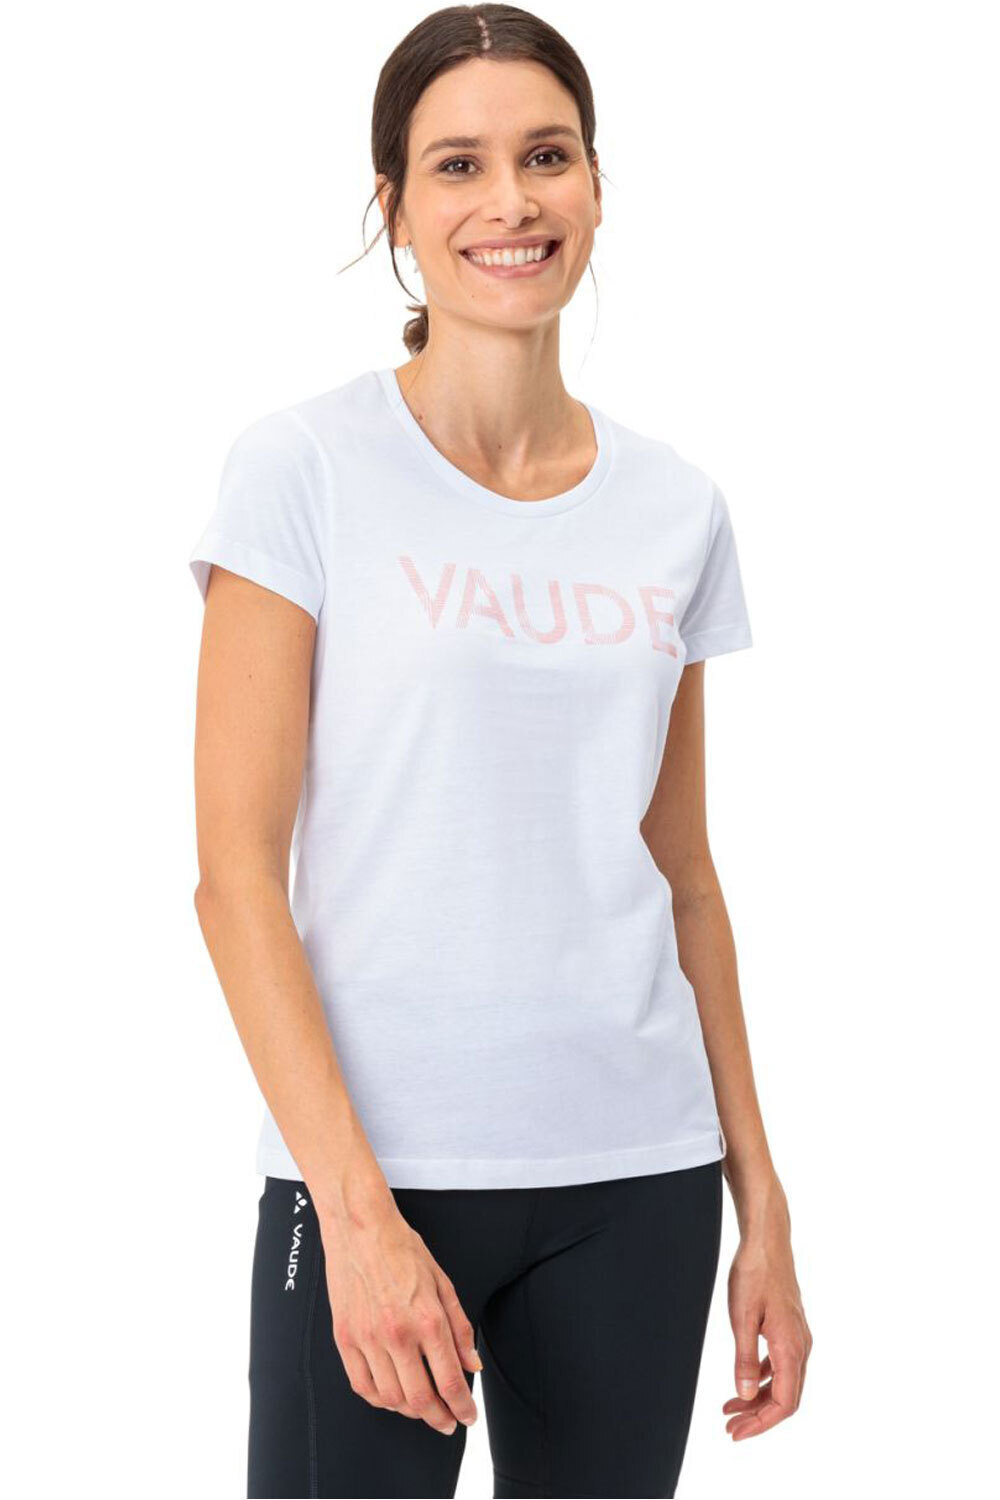 Vaude camiseta montaña manga corta mujer Women's Graphic Shirt vista frontal